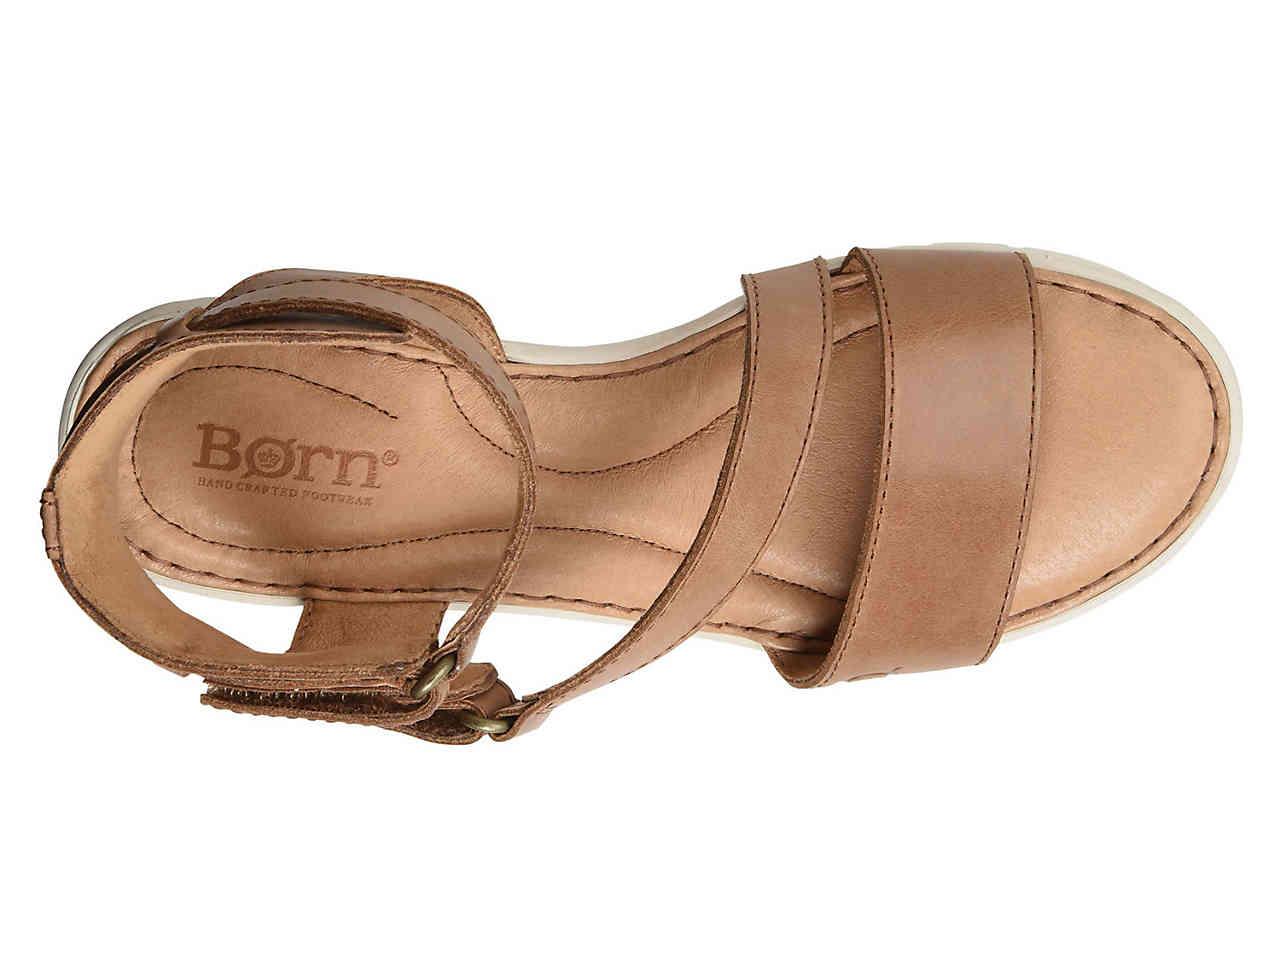 Born Leather Roald Wedge Sandal in 